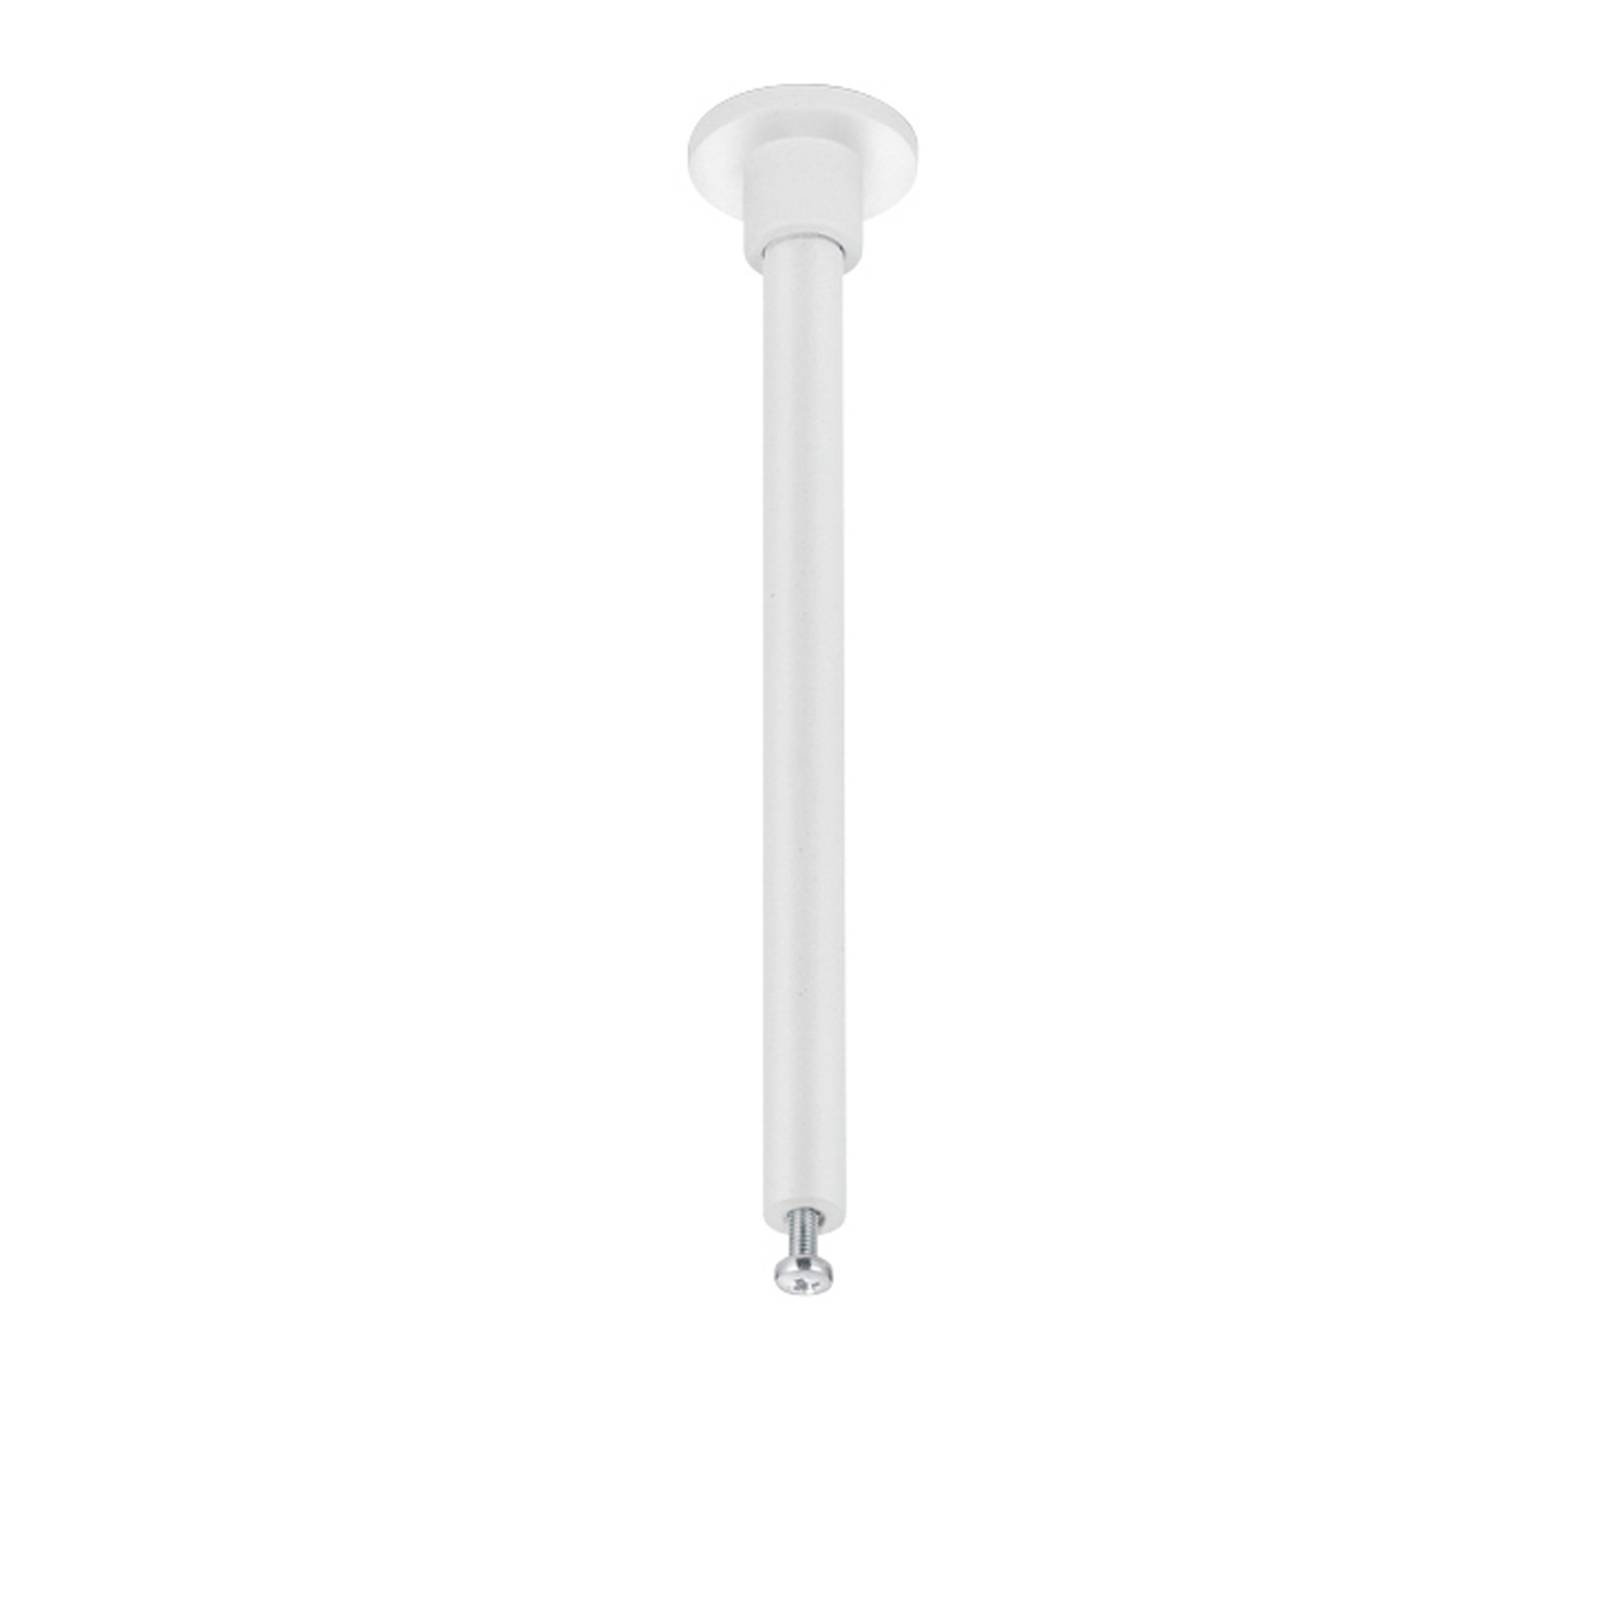 Montážna tyč pre koľajnicu DUOline, biela, 12,5 cm